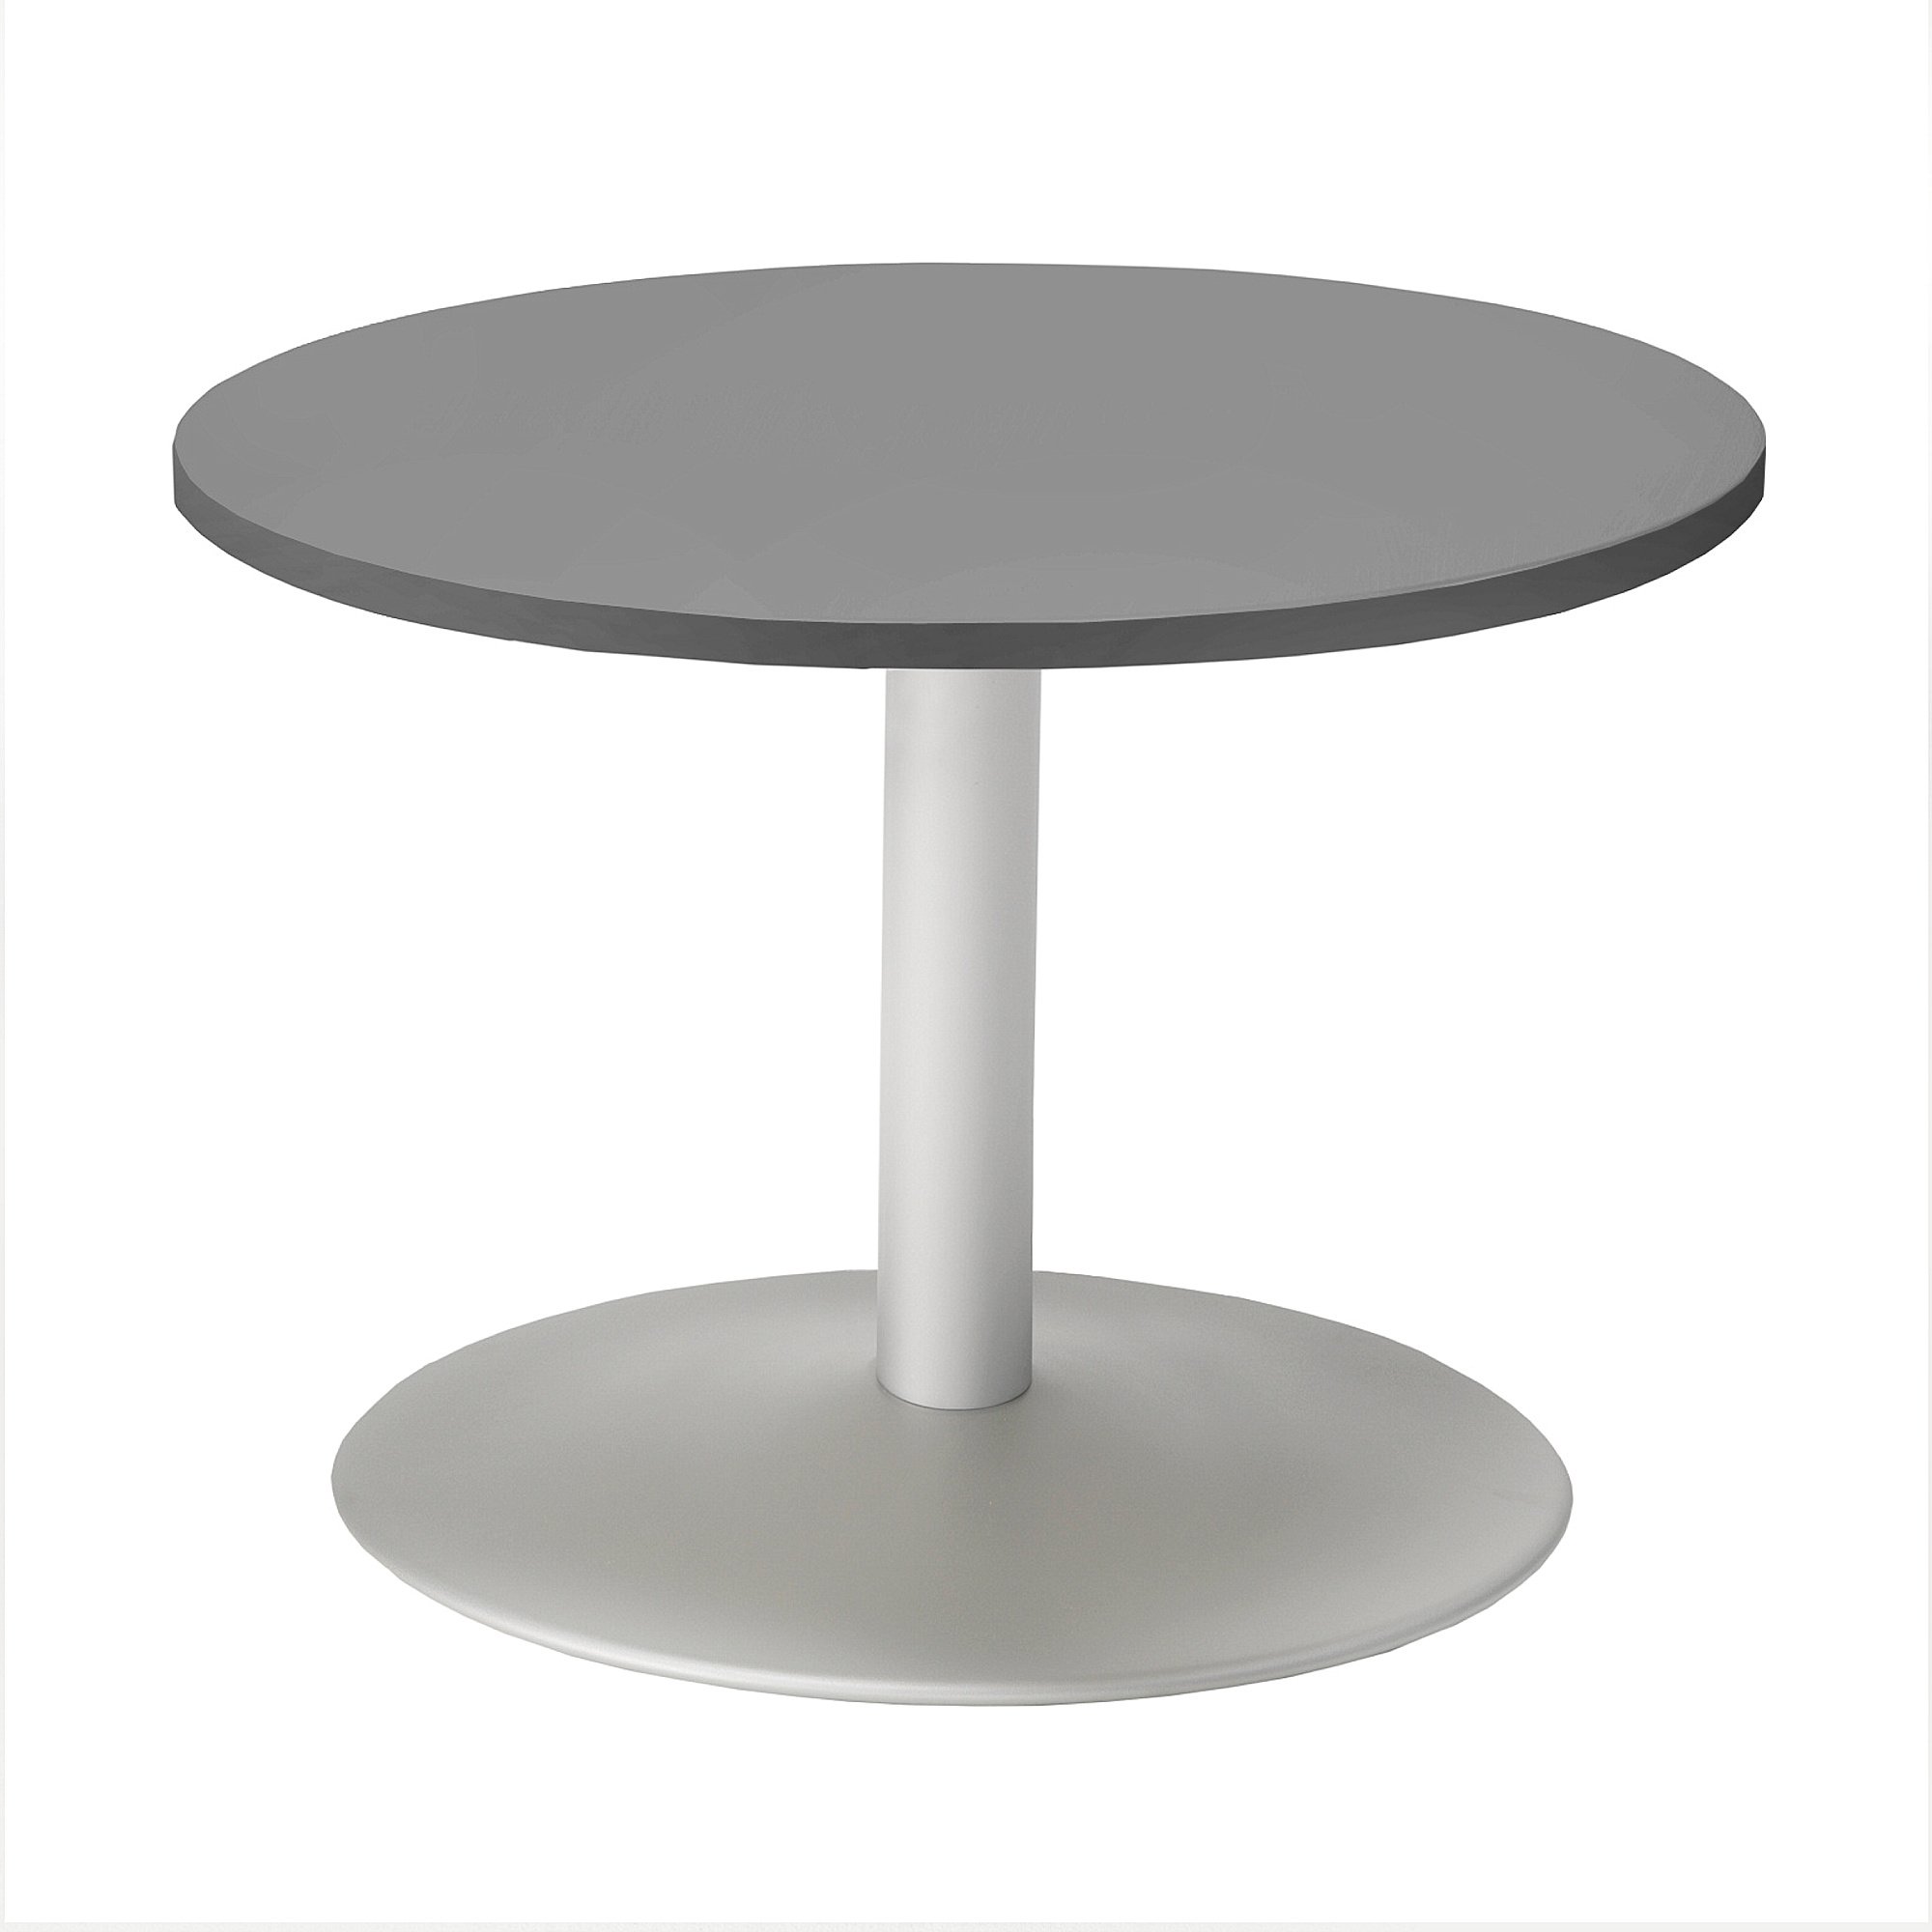 Konferenčný stolík MONTY, Ø700 mm, šedá / šedá